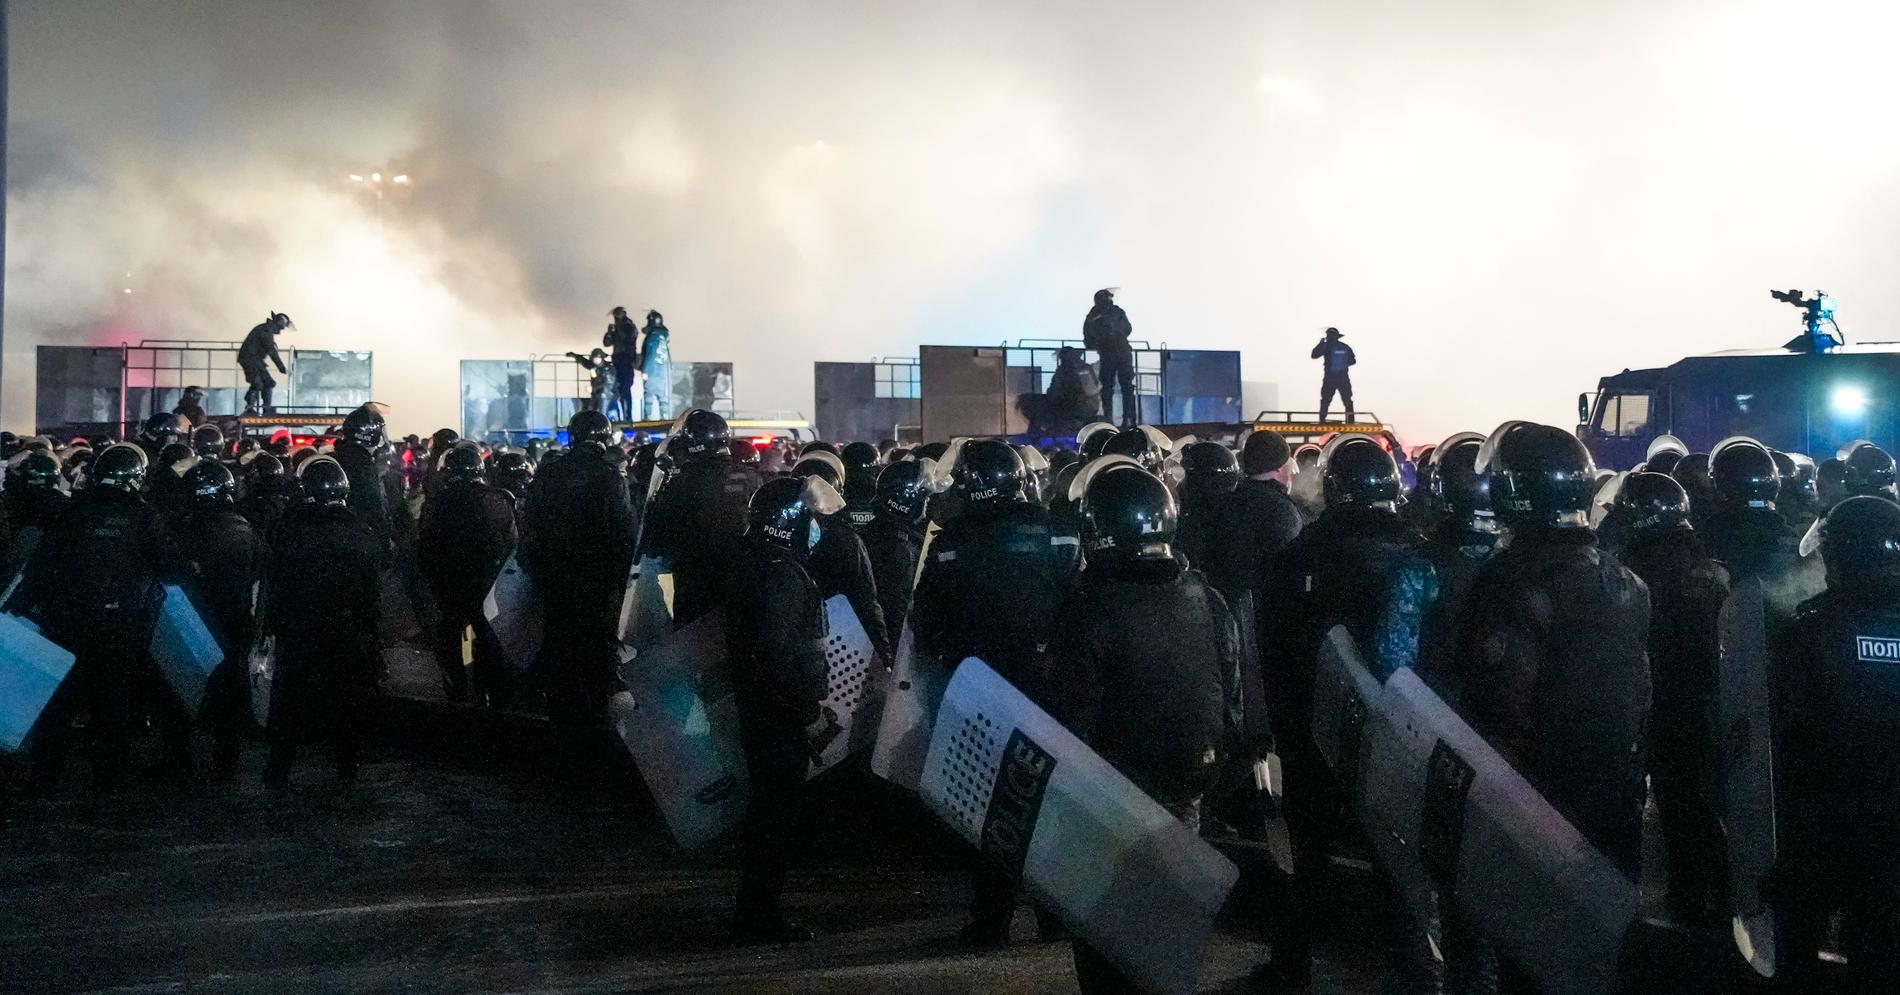  De våldsamma protesterna startade på tisdagen. Lokala nyhetsrapporter uppger att omkring tusen demonstranter skingrats under tisdagskvällen och att flera av dem gripits av polis.